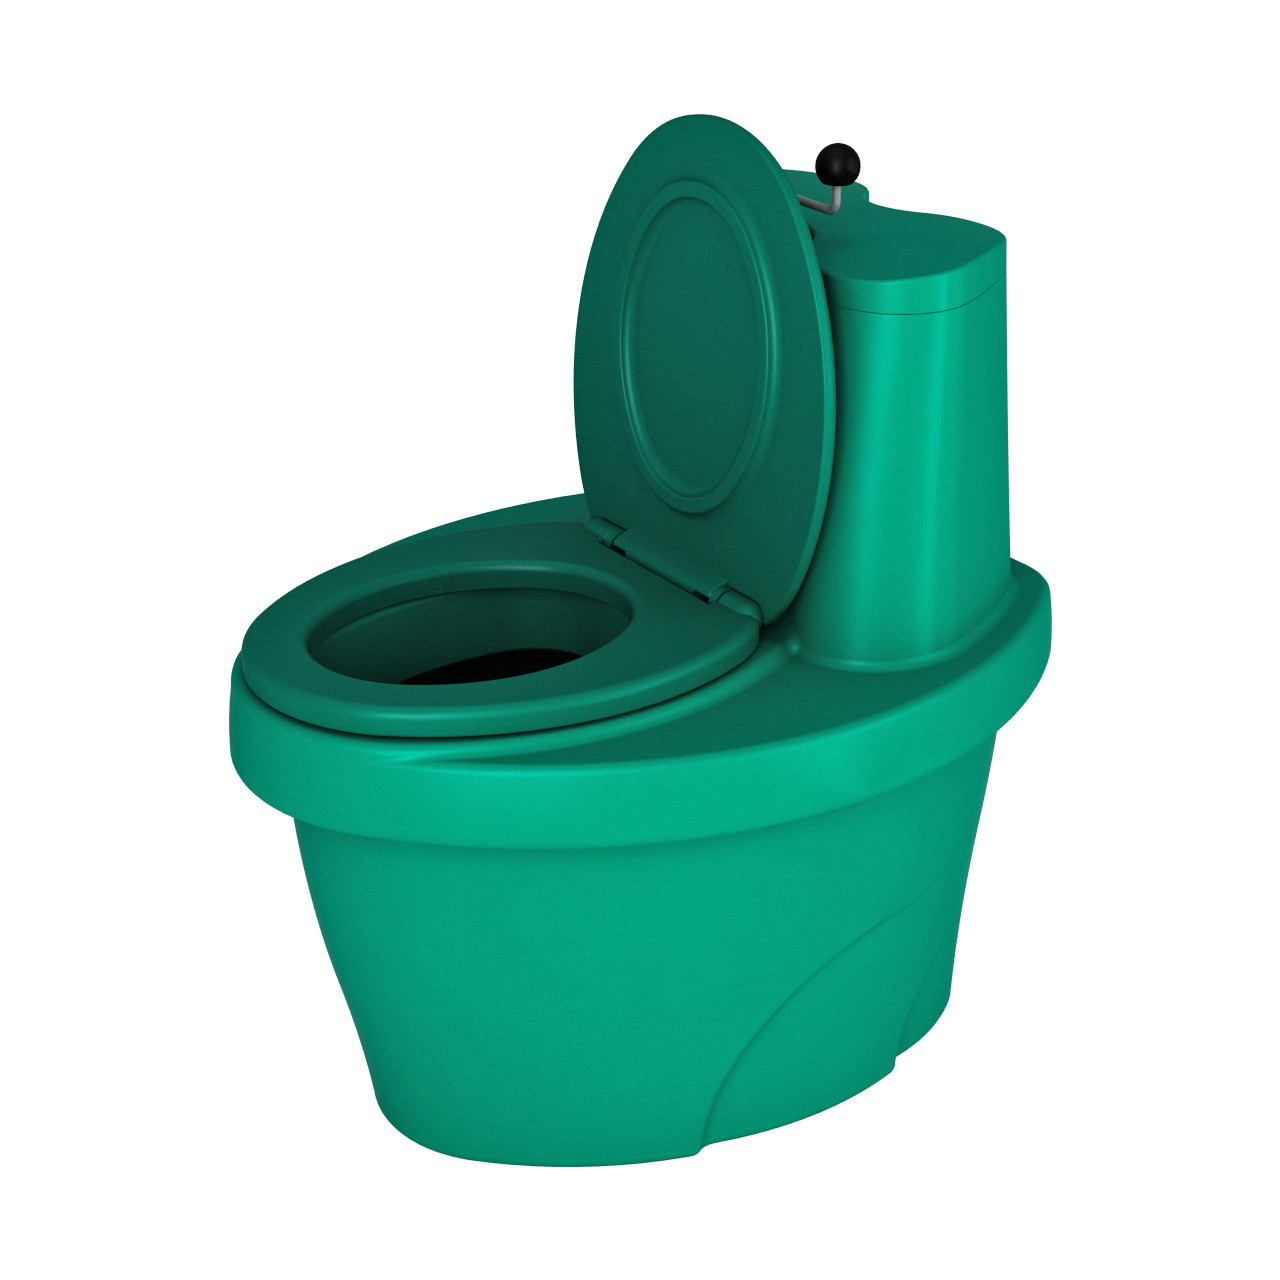 Торфяной туалет "Rostok" зеленый